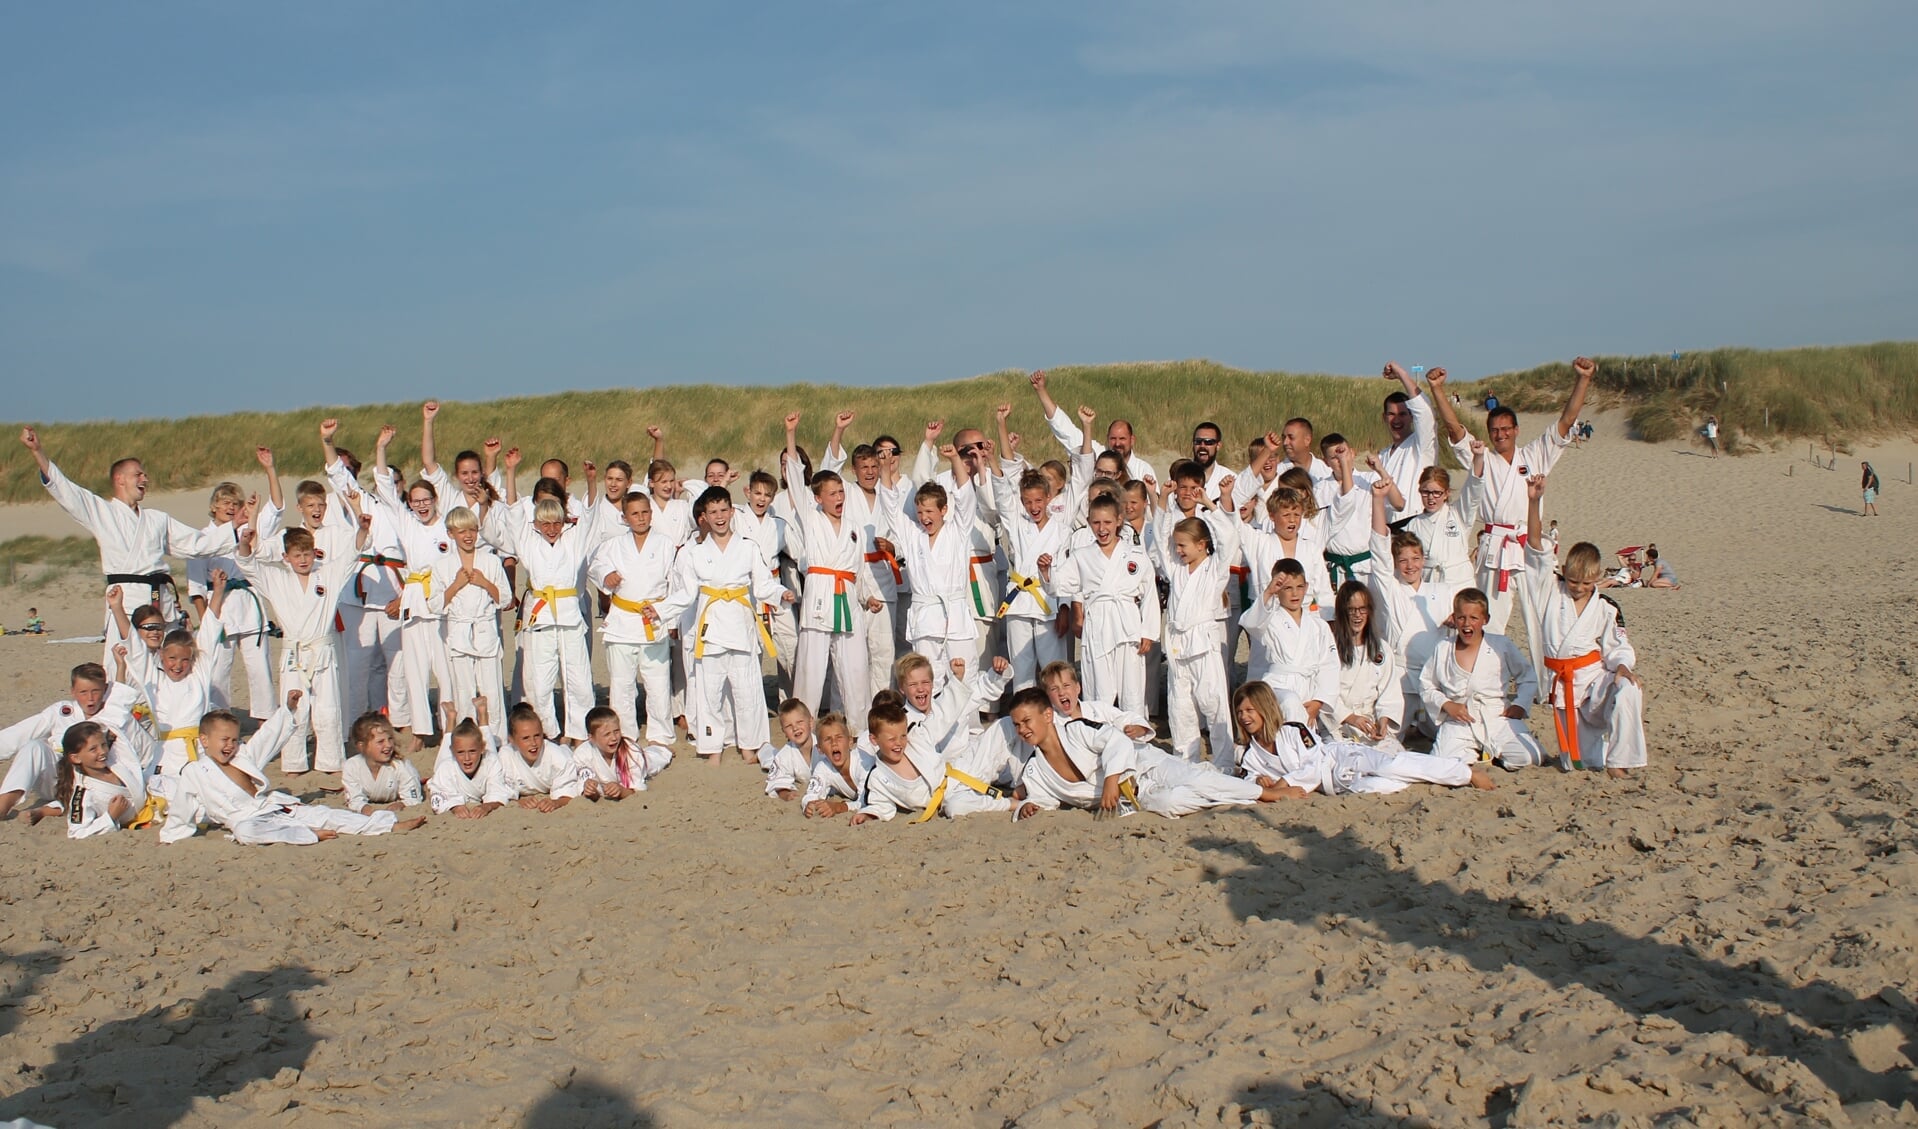 De leden van Shintai en Budo school Niedorp hebben het seizoen afgesloten op het strand van Callantsoog. (Foto: aangeleverd)